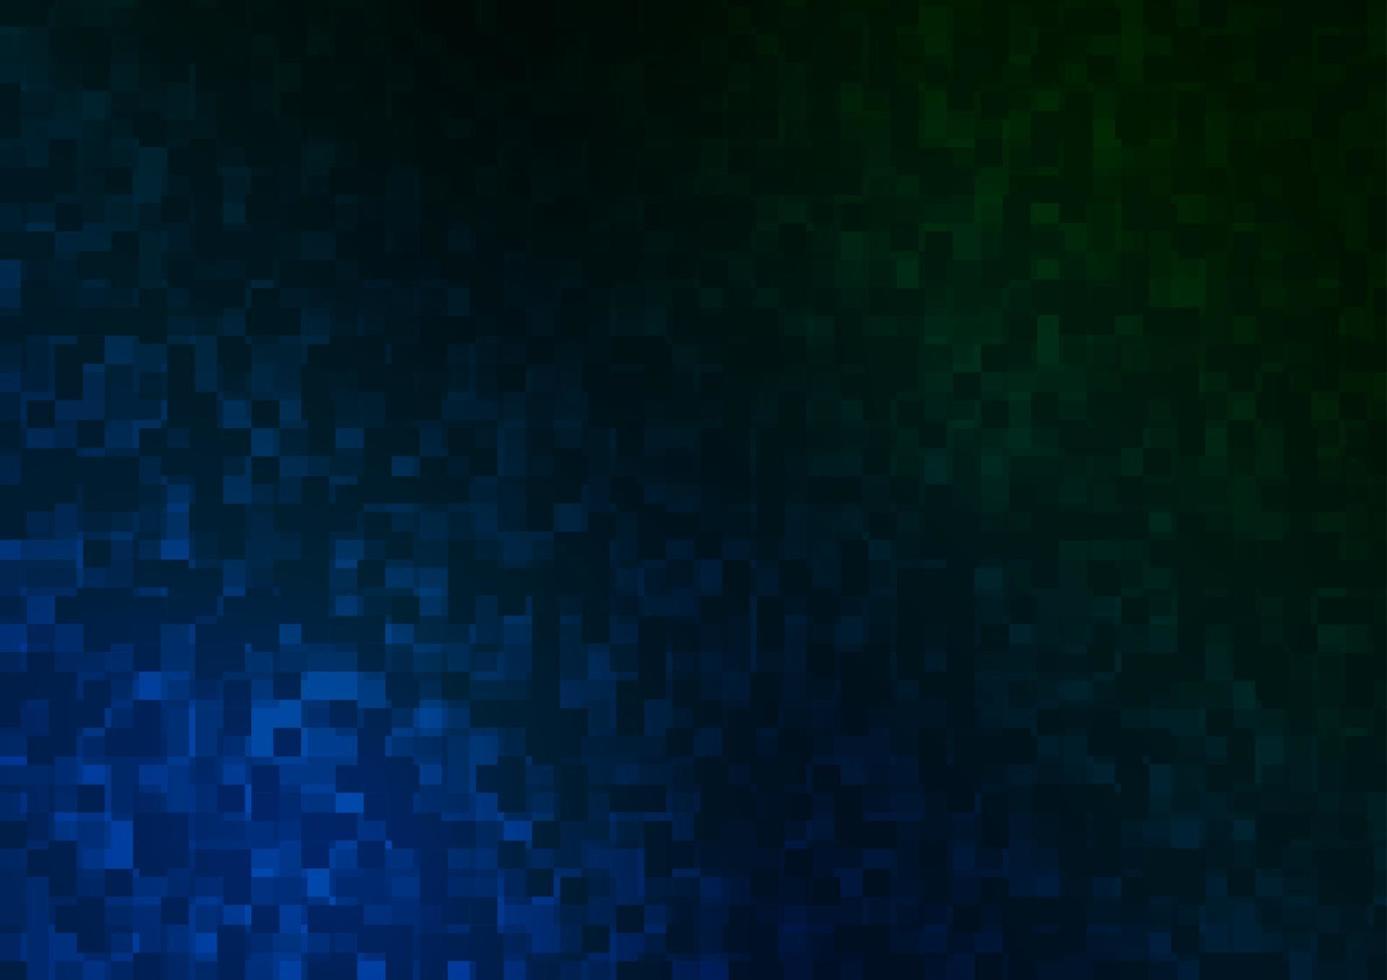 mörkblå, grön vektormall med kristaller, rektanglar. vektor